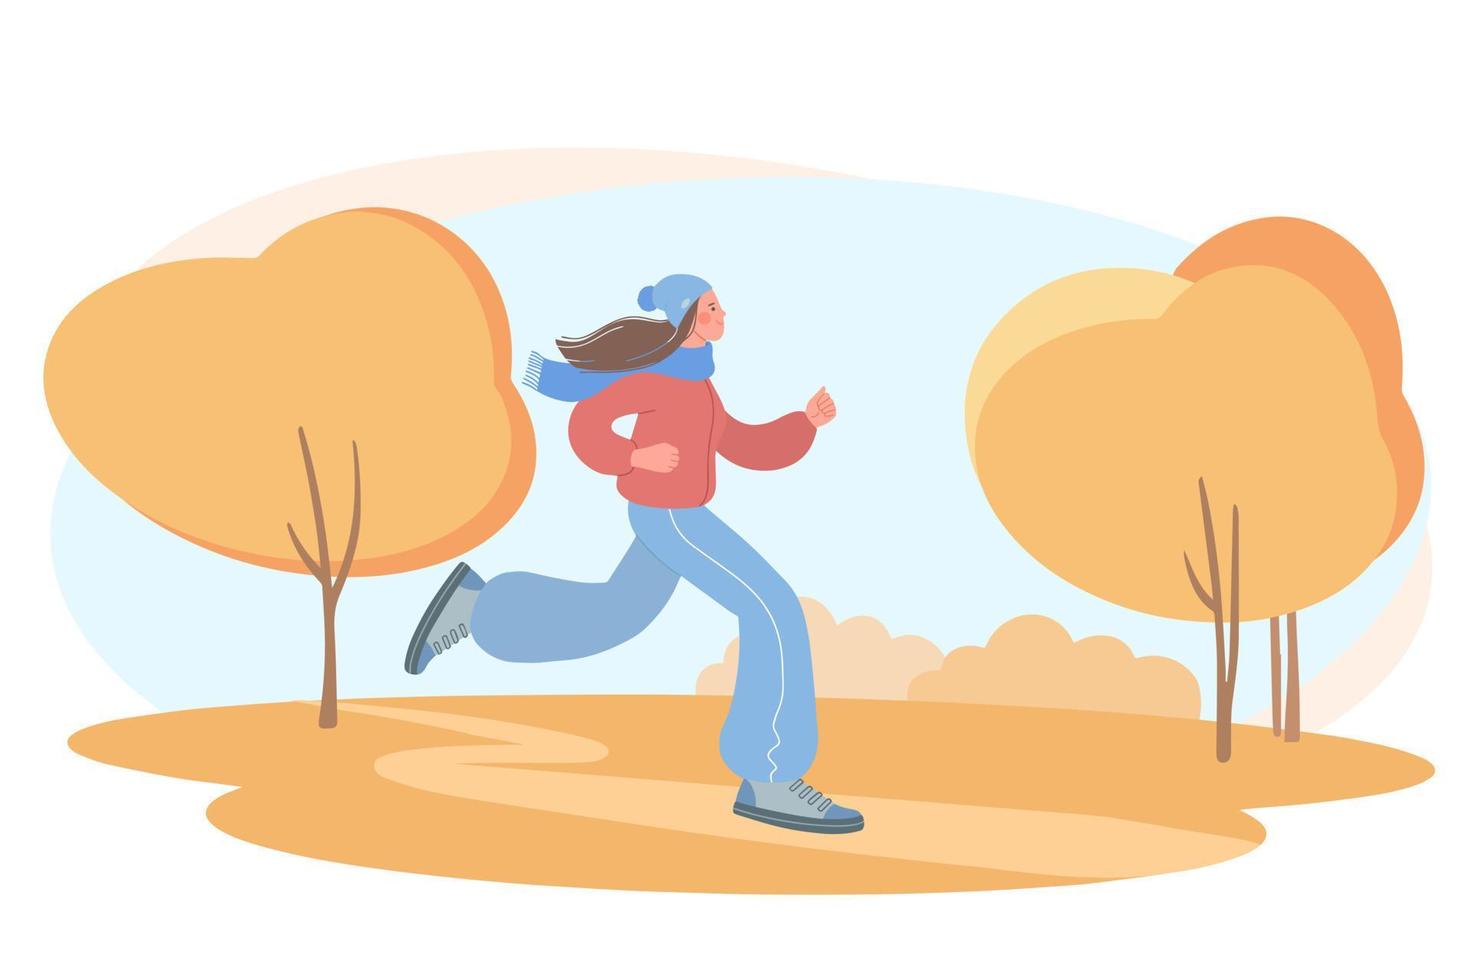 mooi meisje houdt zich bezig met sport. illustratie van een meisje dat jogt in een herfstpark vector